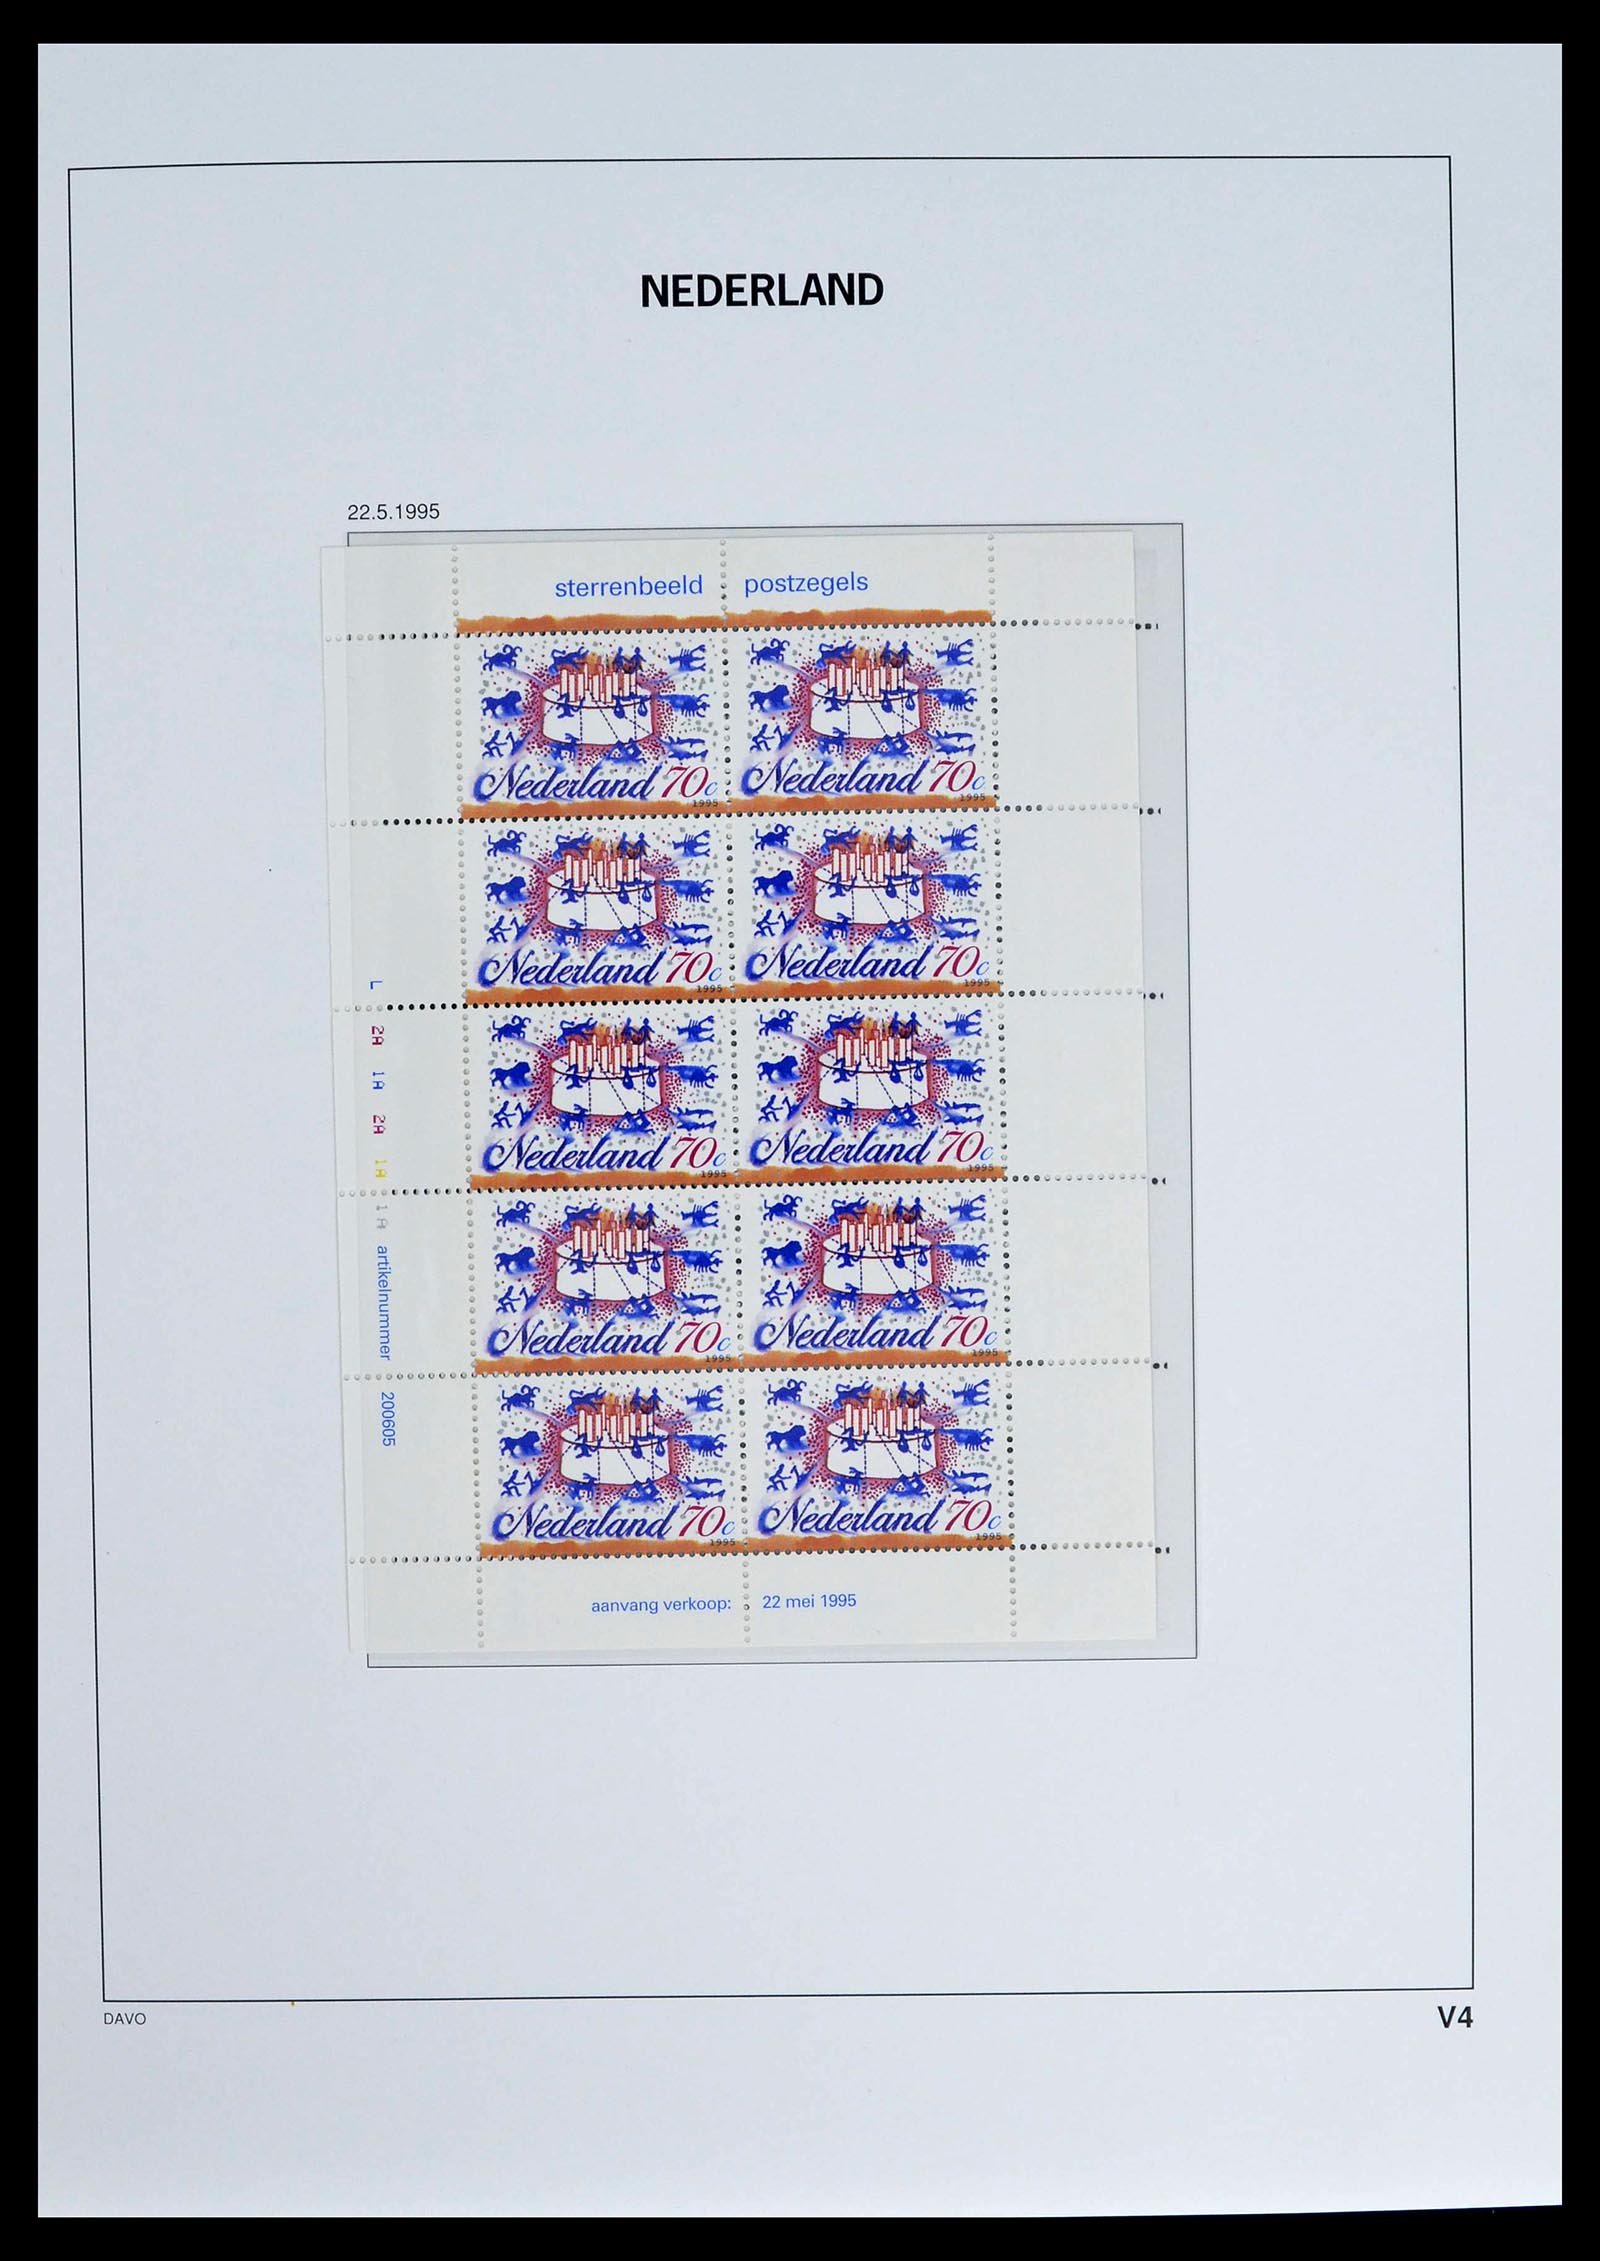 39134 0012 - Stamp collection 39134 Netherlands sheetlets 1992-2019!